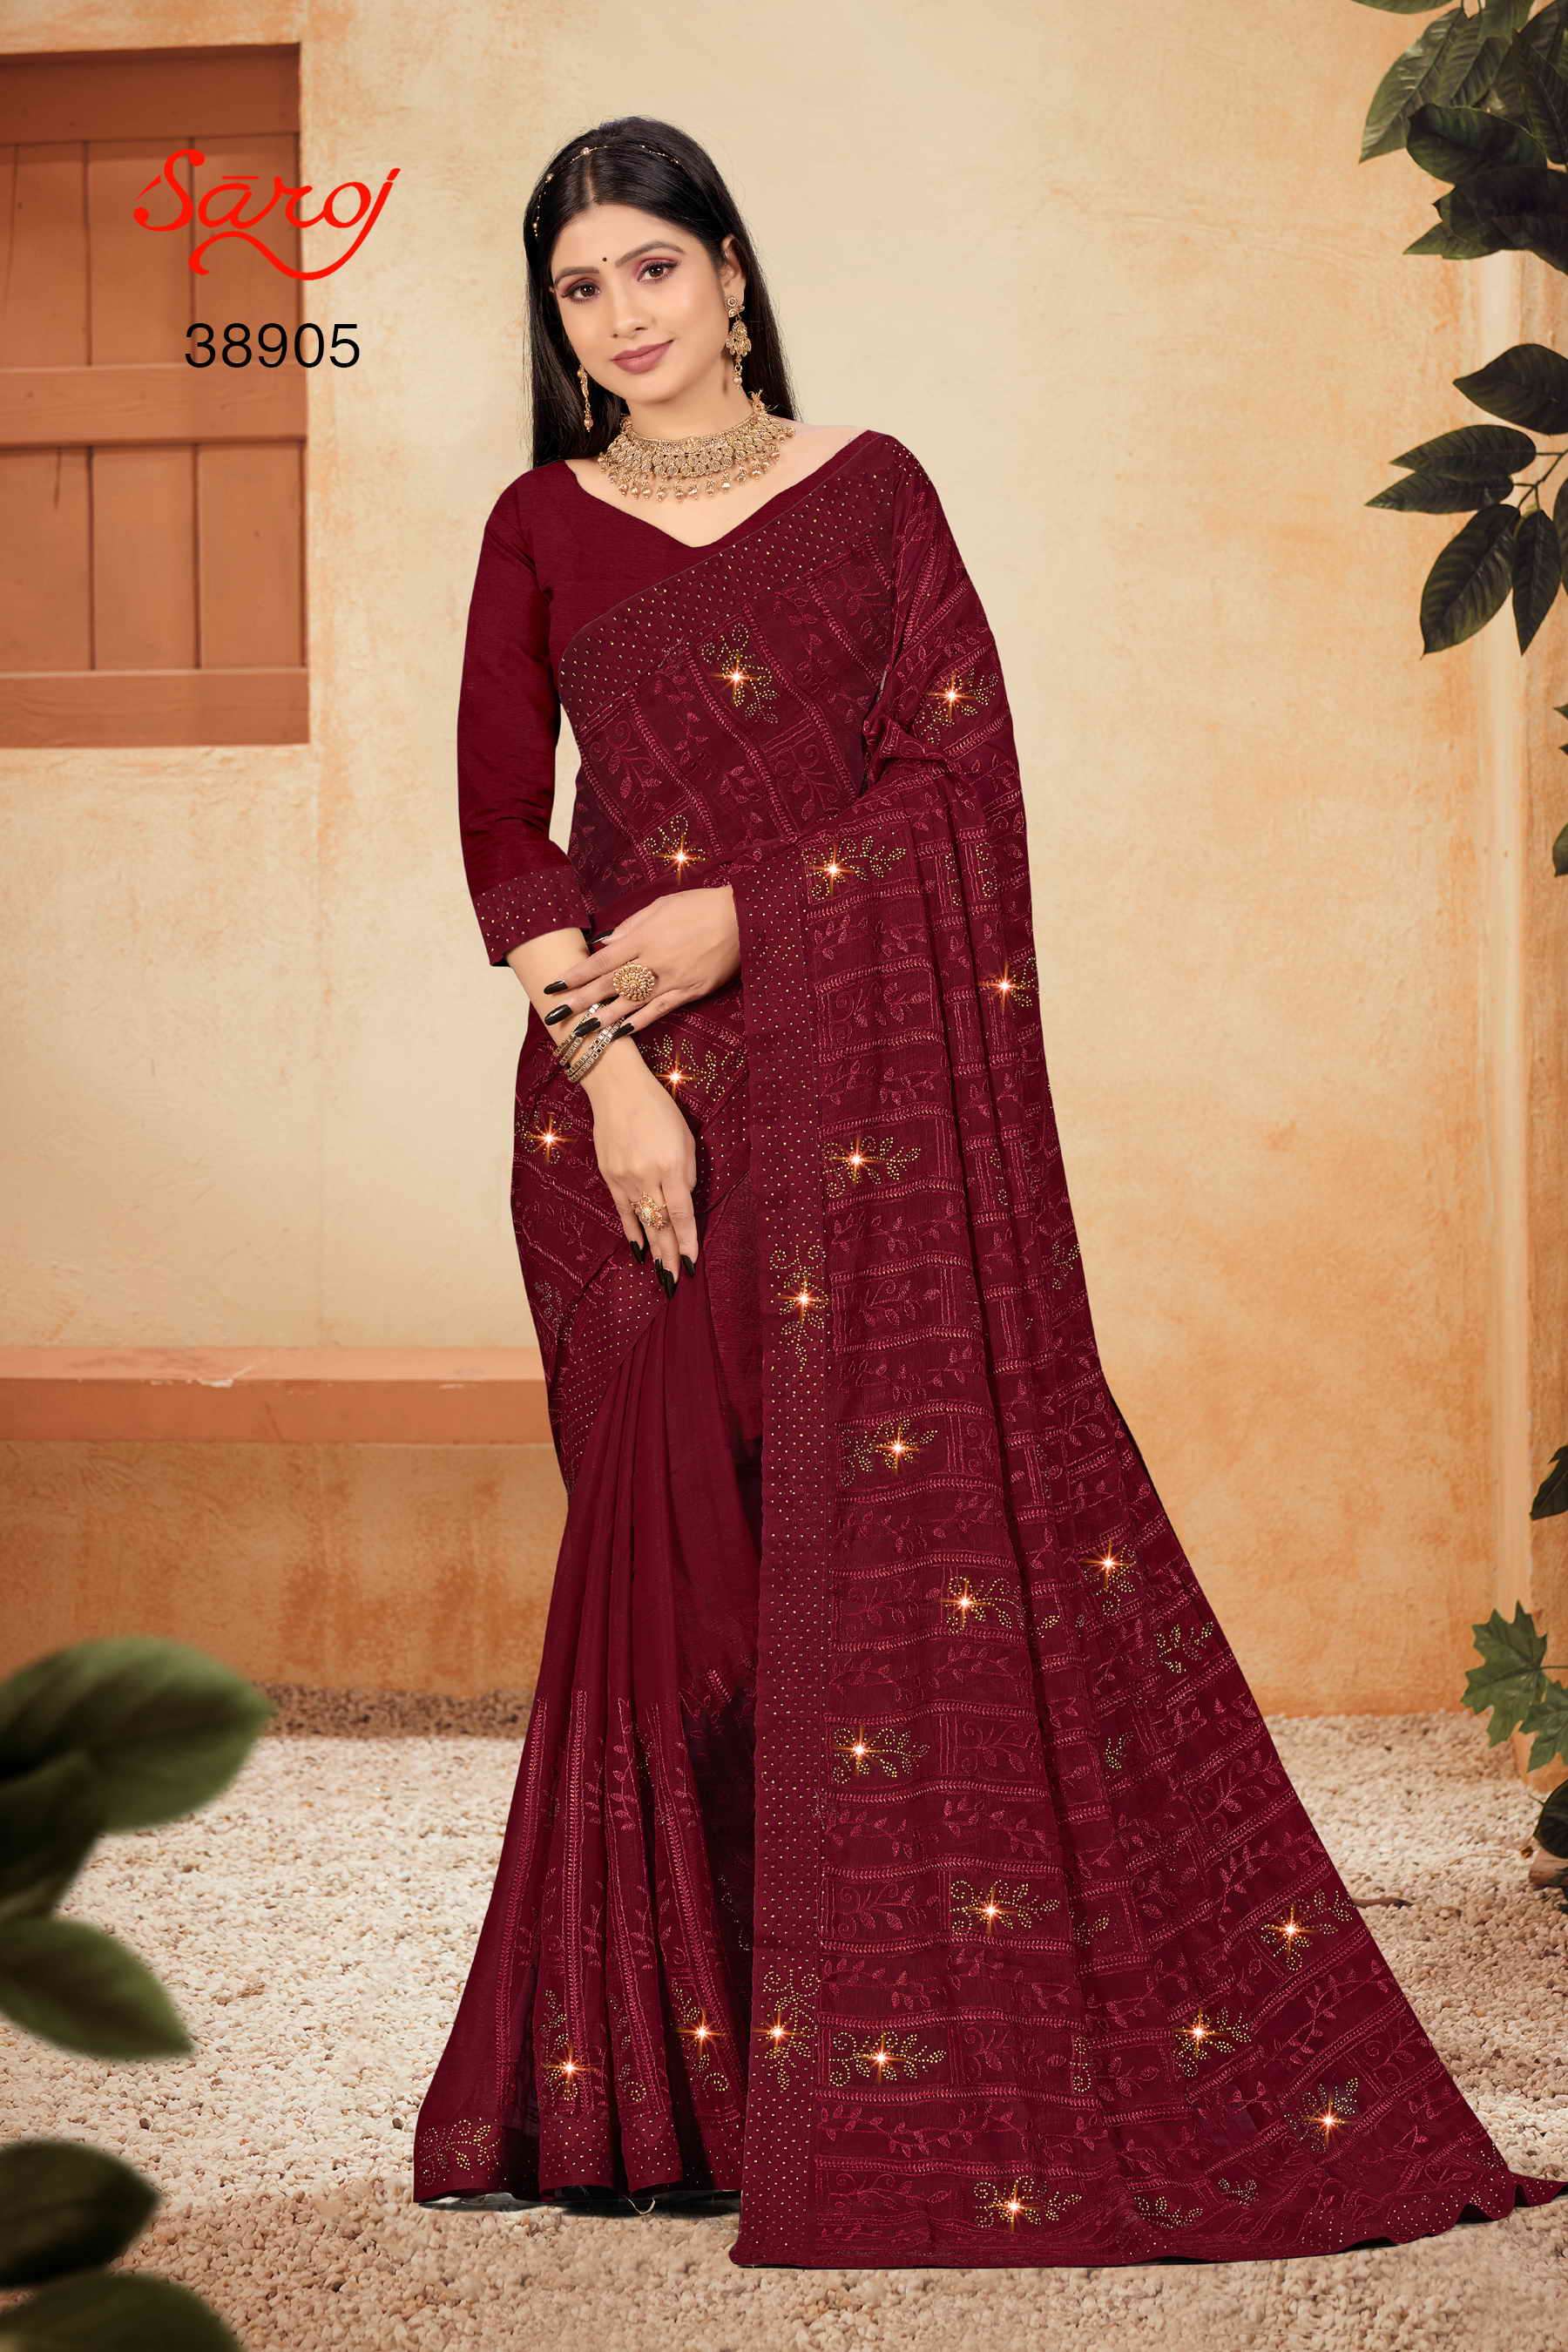 Saroj textile presents Richees Designer sarees catalogue